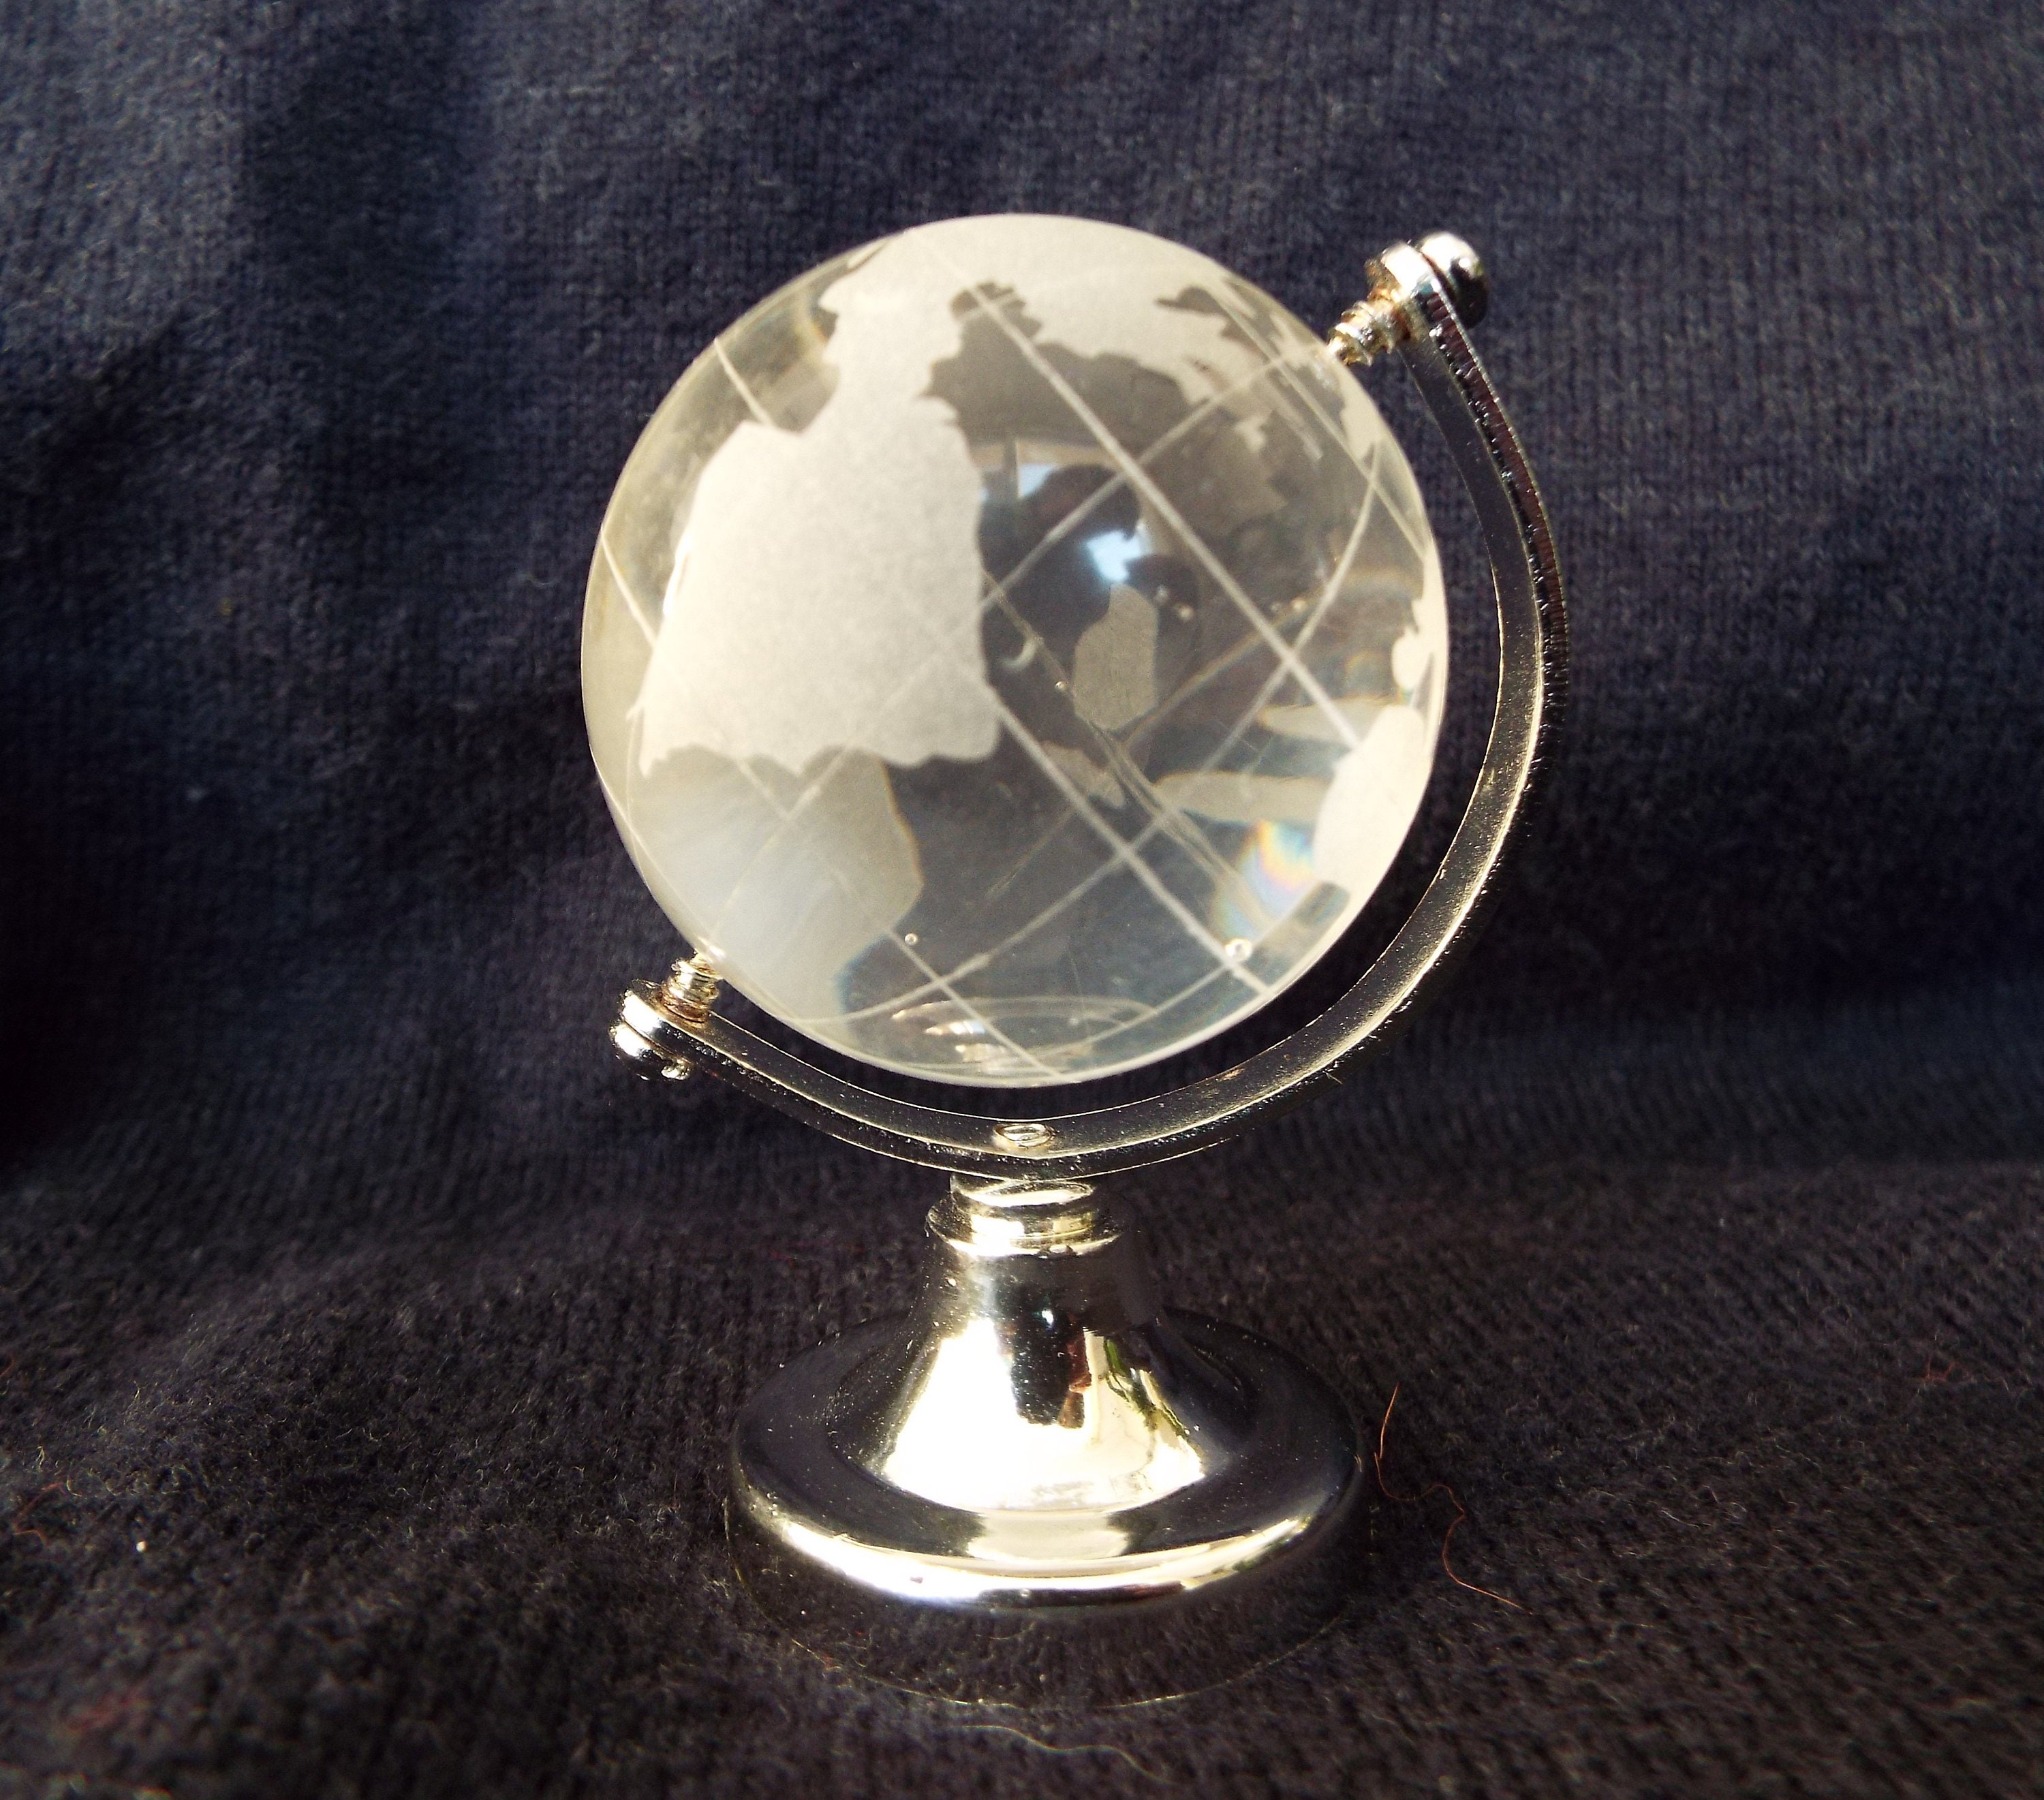 Mini globe en verre mignon, globe terrestre, jouets éducatifs